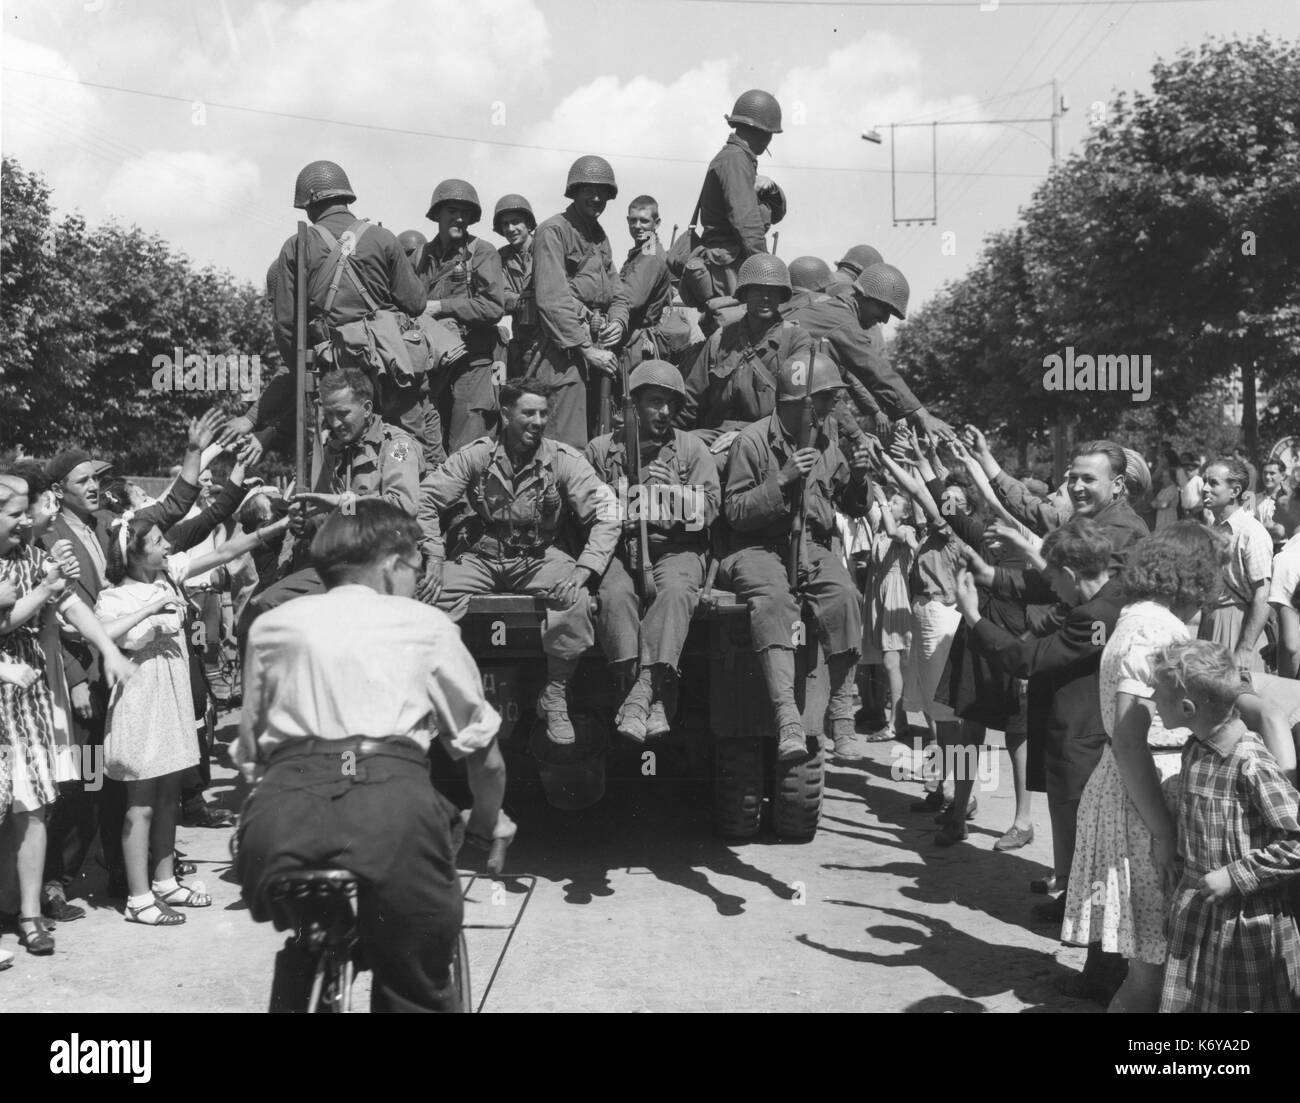 Noi le truppe dell'esercito sono accolti da una folla esultante di liberato parigini come essi entrare in città. Parigi, Francia, 8/25/44. Foto Stock